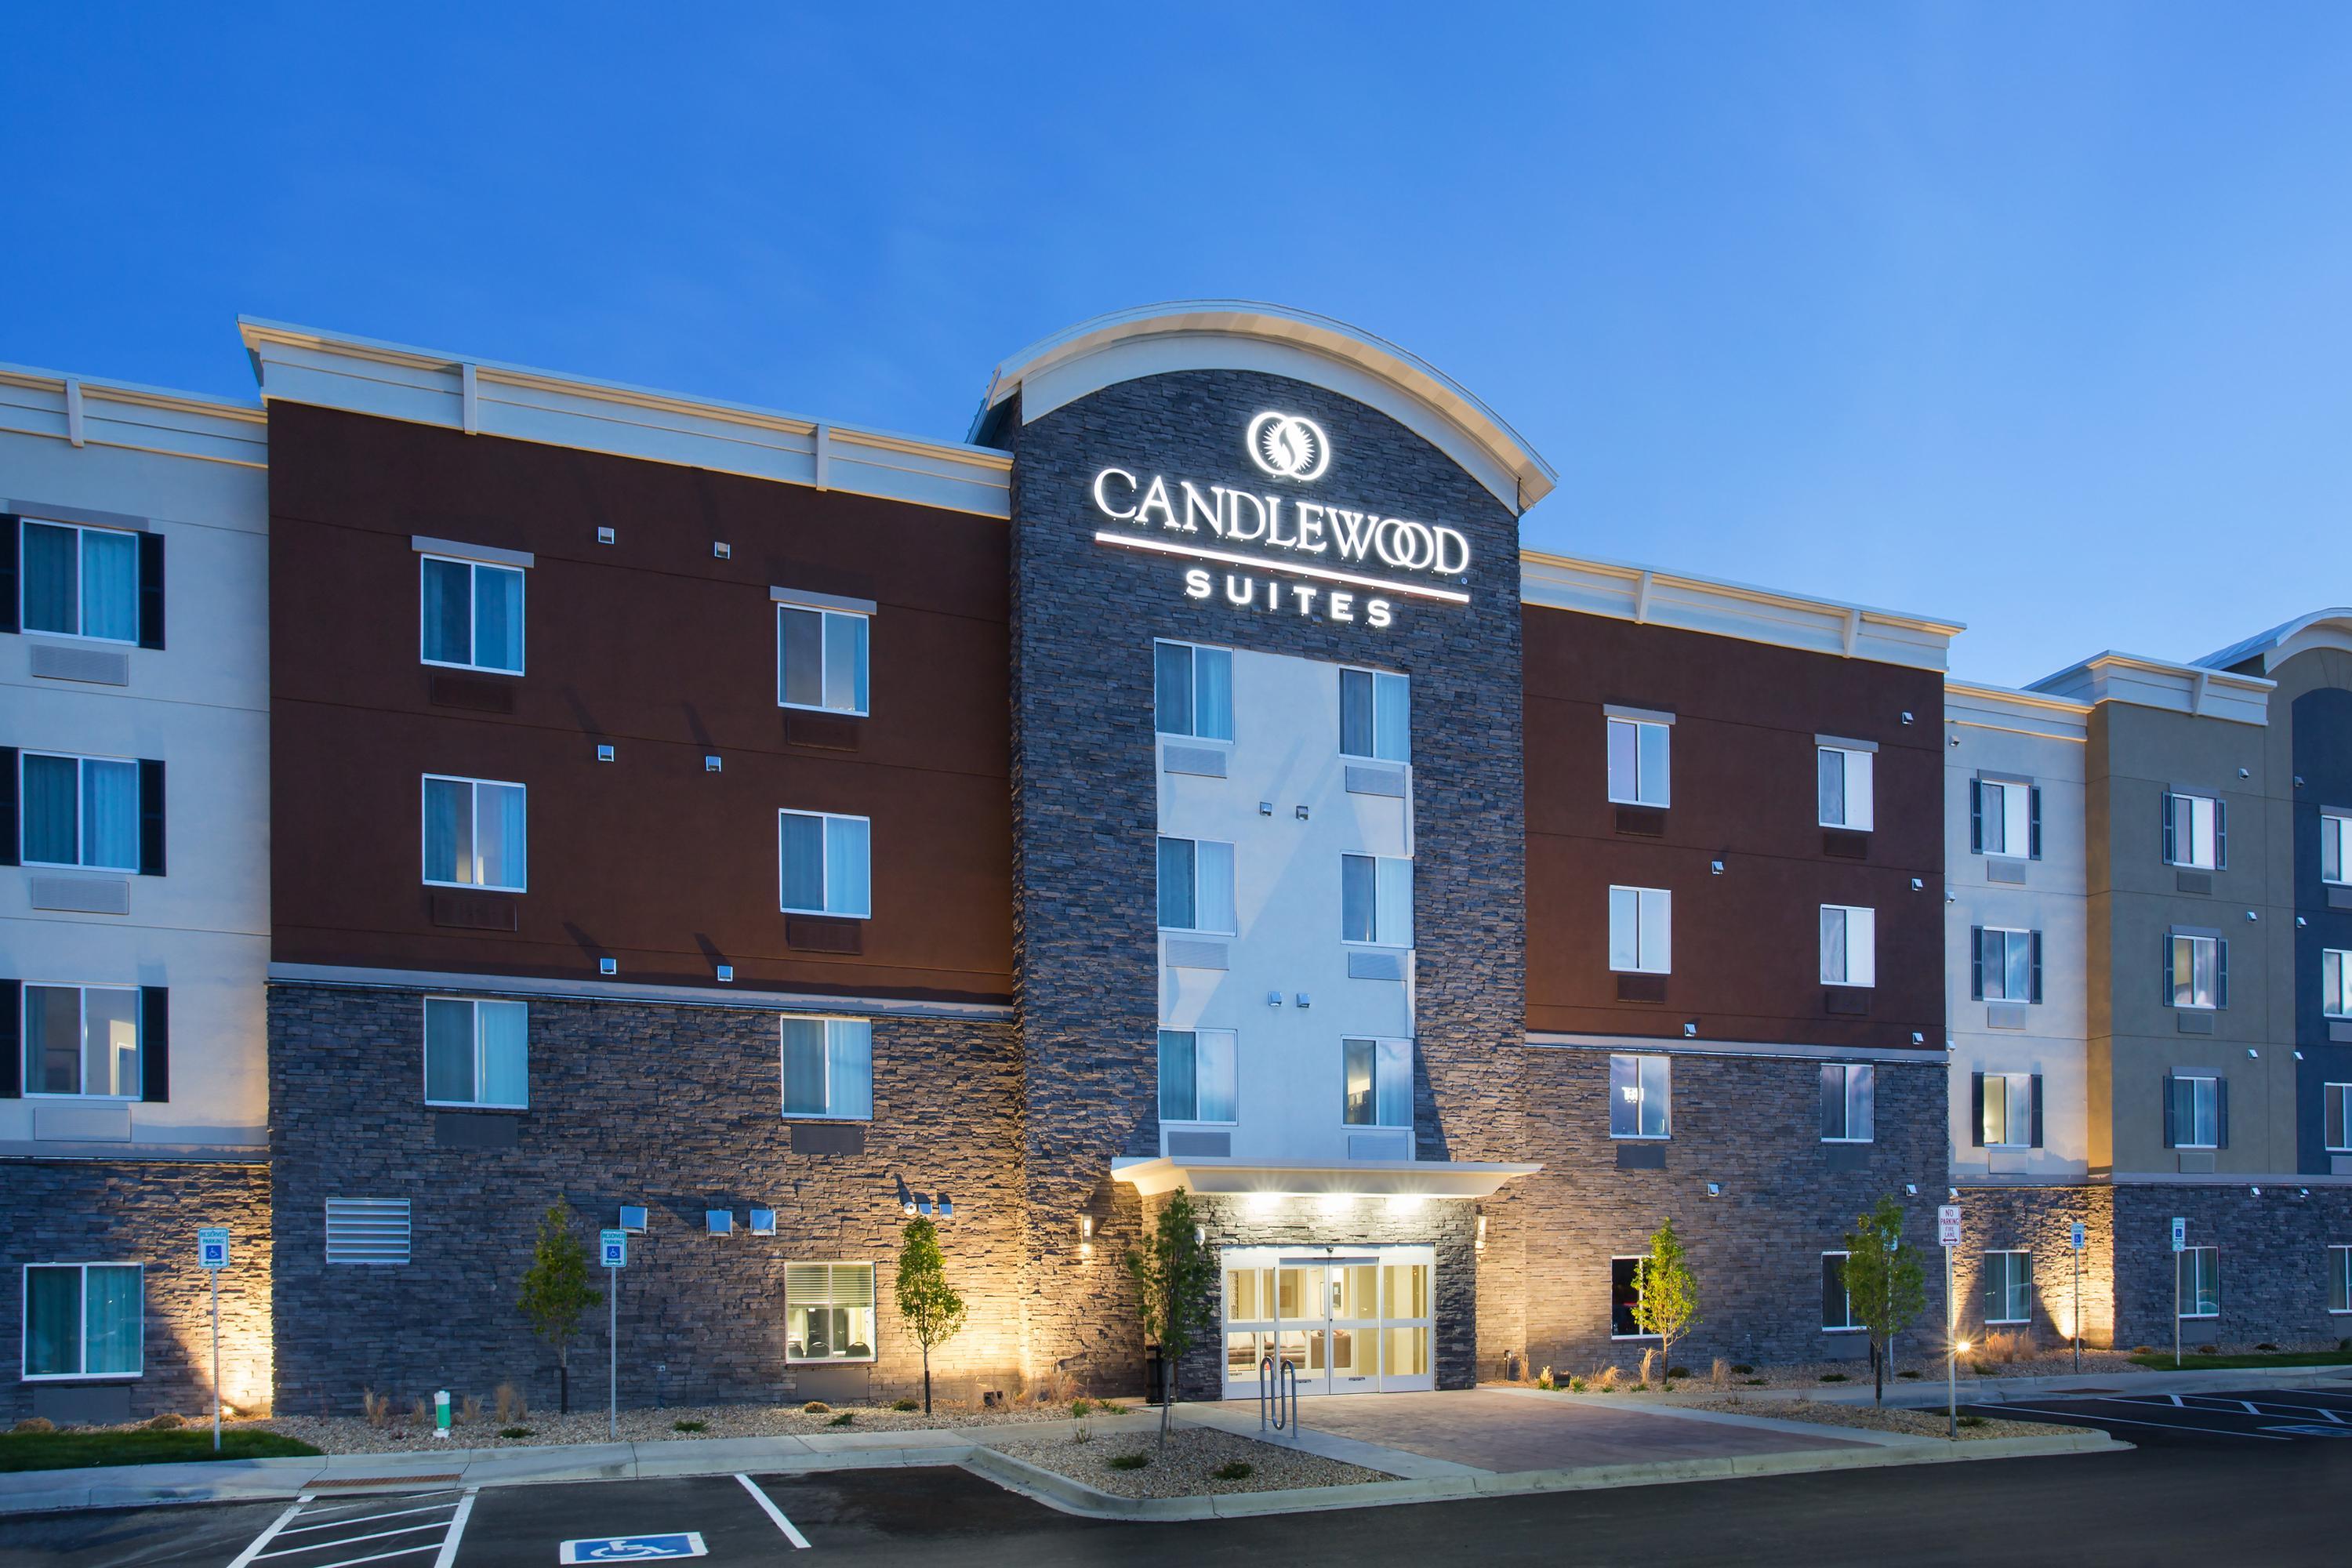 Hotel Room Tour-Room 233-Candlewood Suites Columbus/Polaris-Columbus,OH -  YouTube